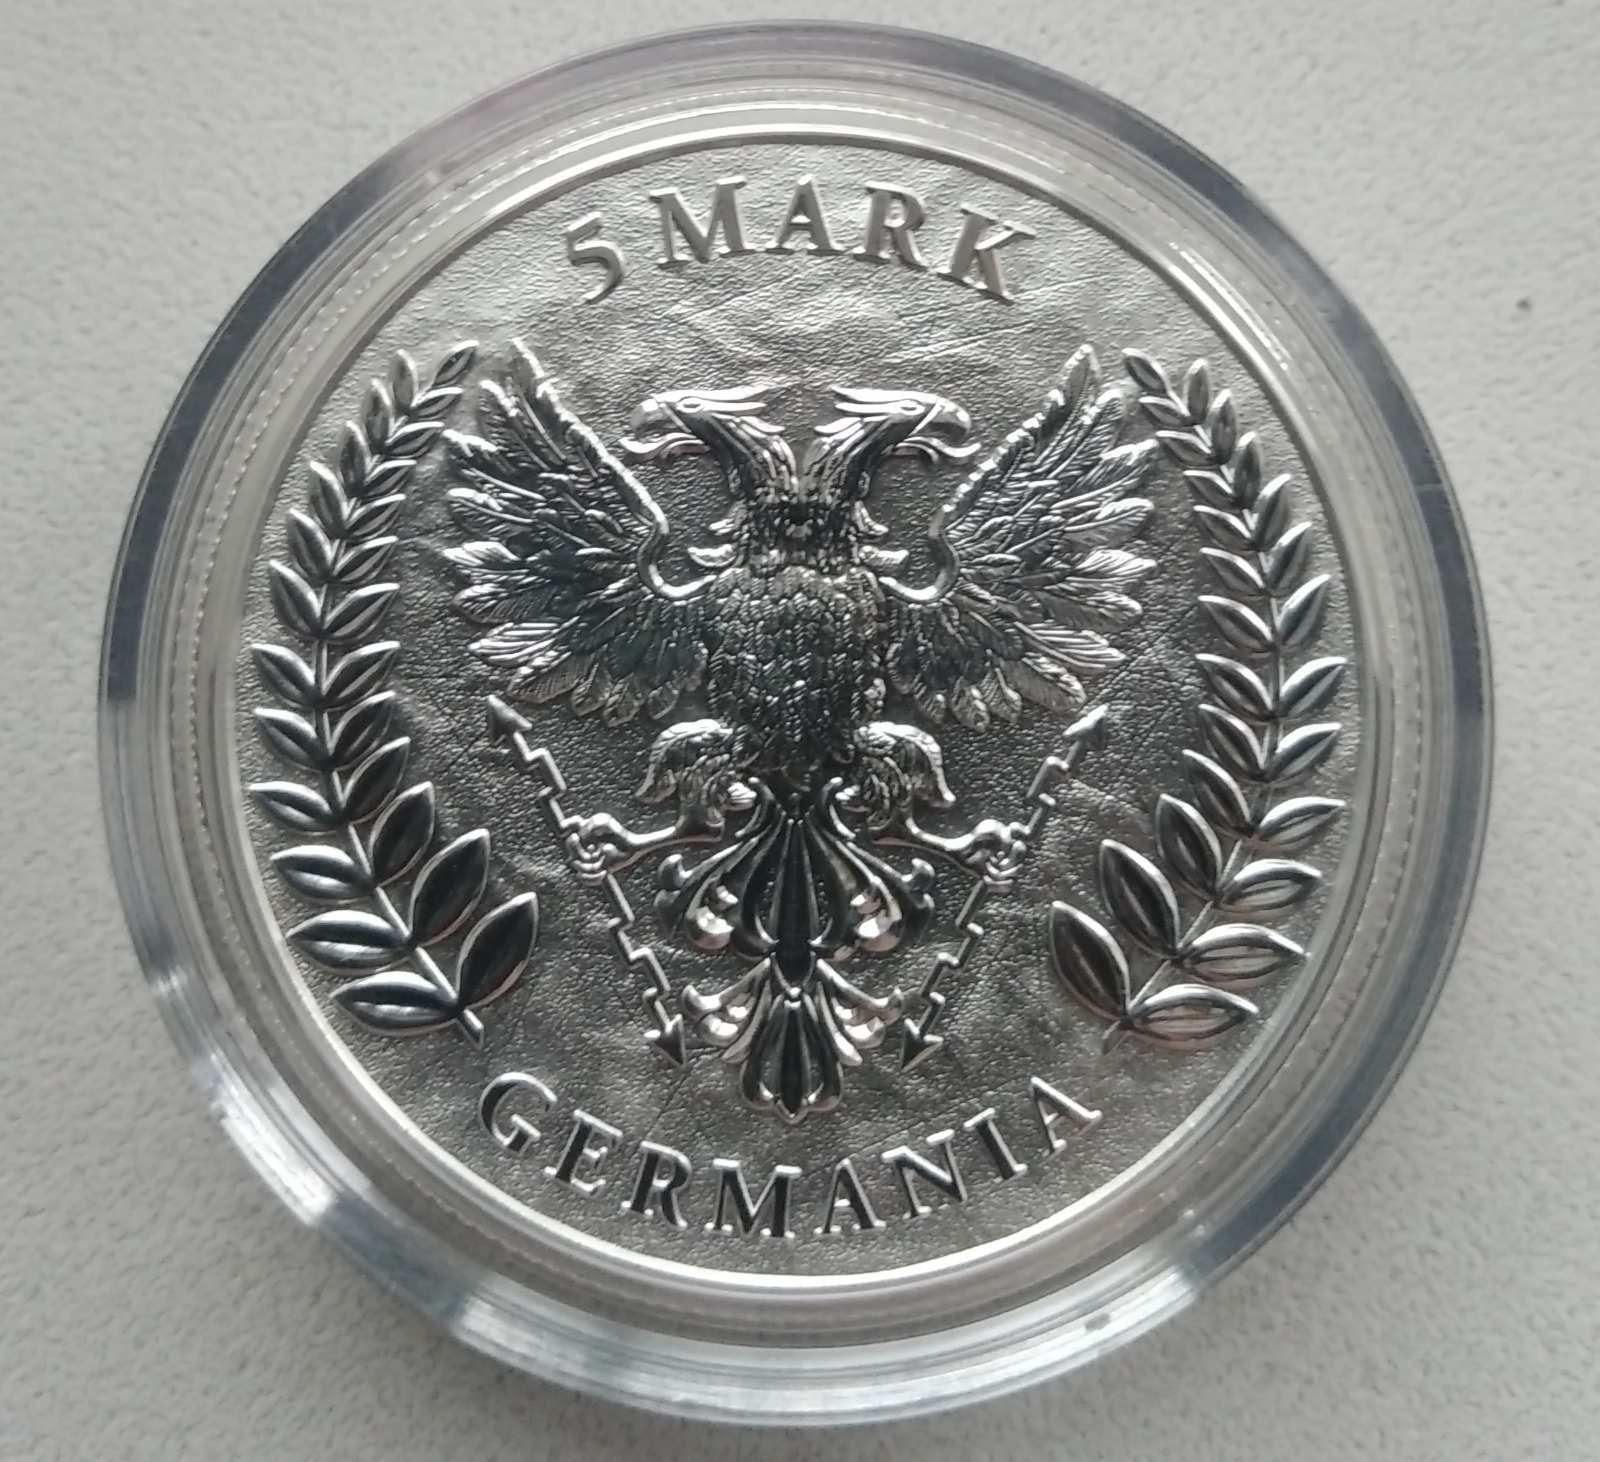 Срібна монета раунд GERMANIA 2022 із сертифікатом від Germania Mint
До